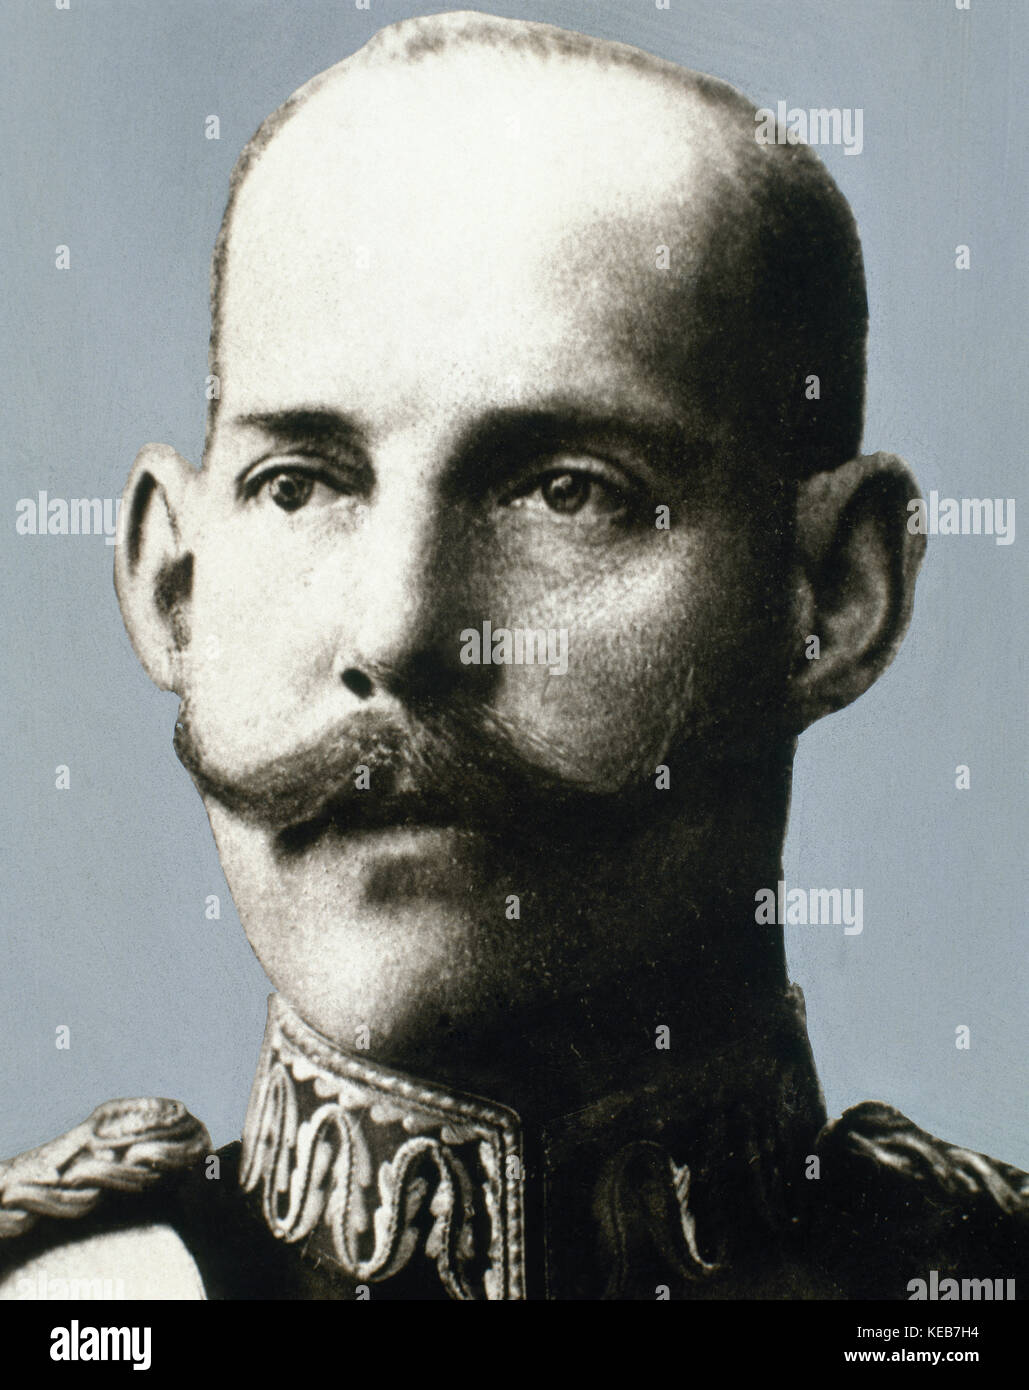 Konstantin I (1868-1923). König von Griechenland. Porträt. Fotografie. Stockfoto